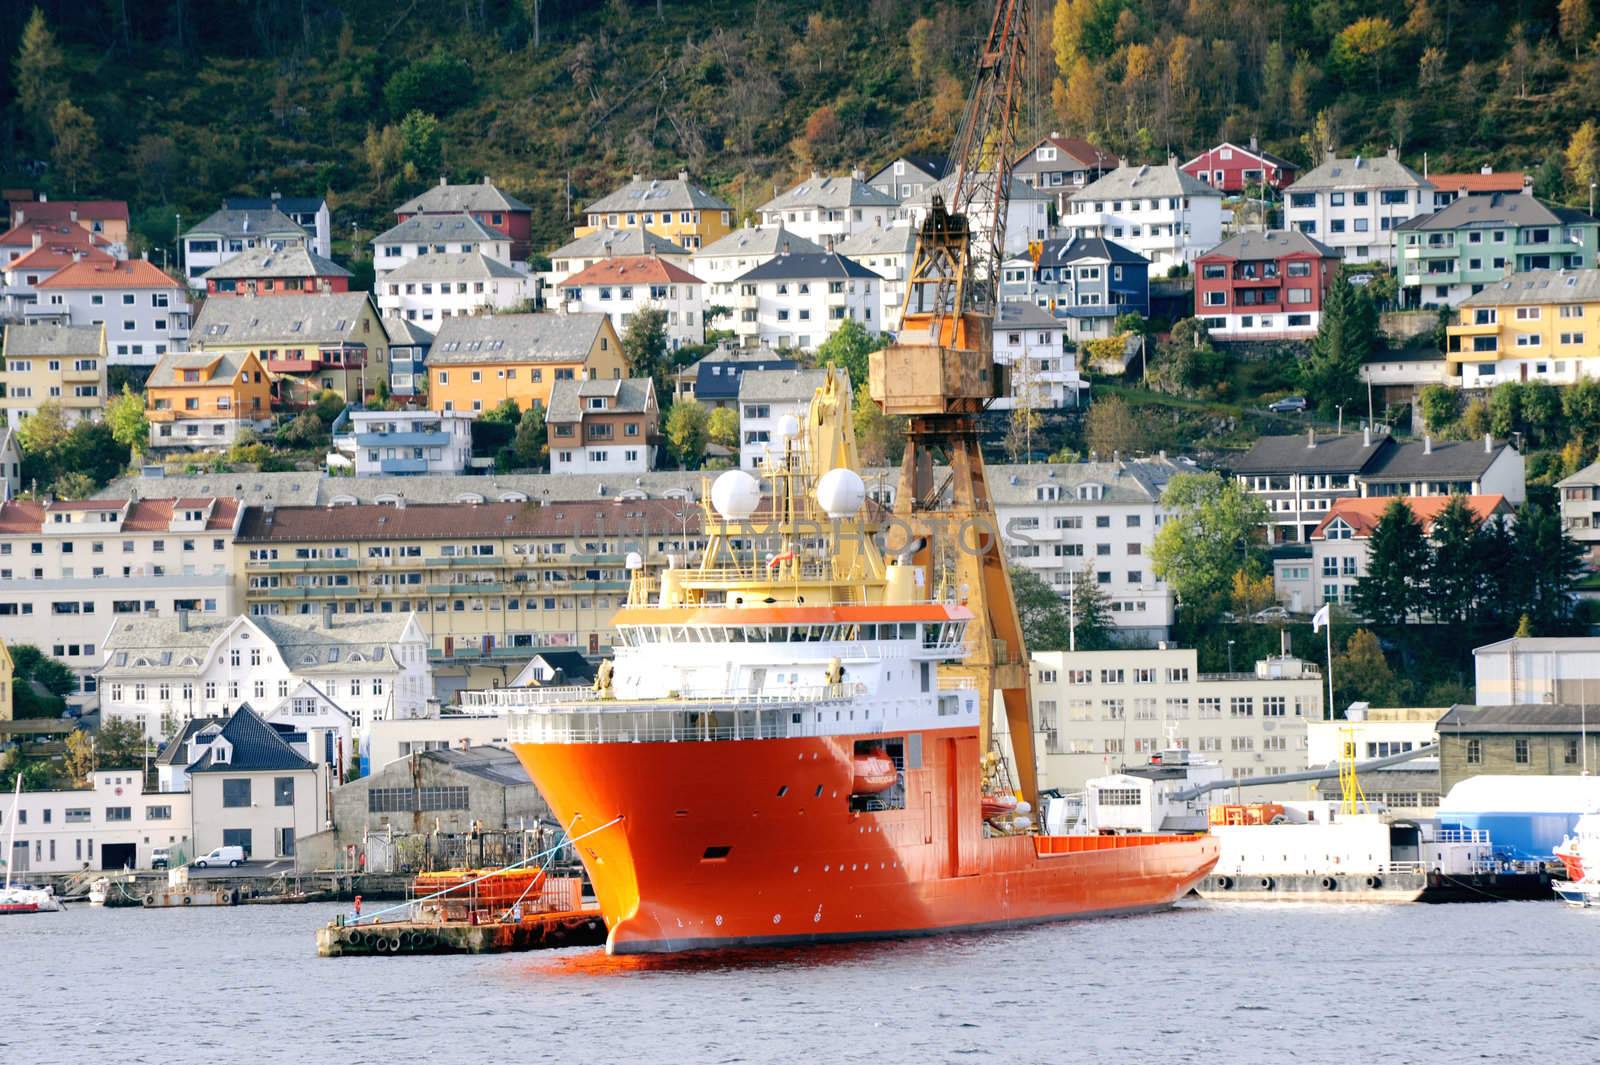 Bergen by Alenmax